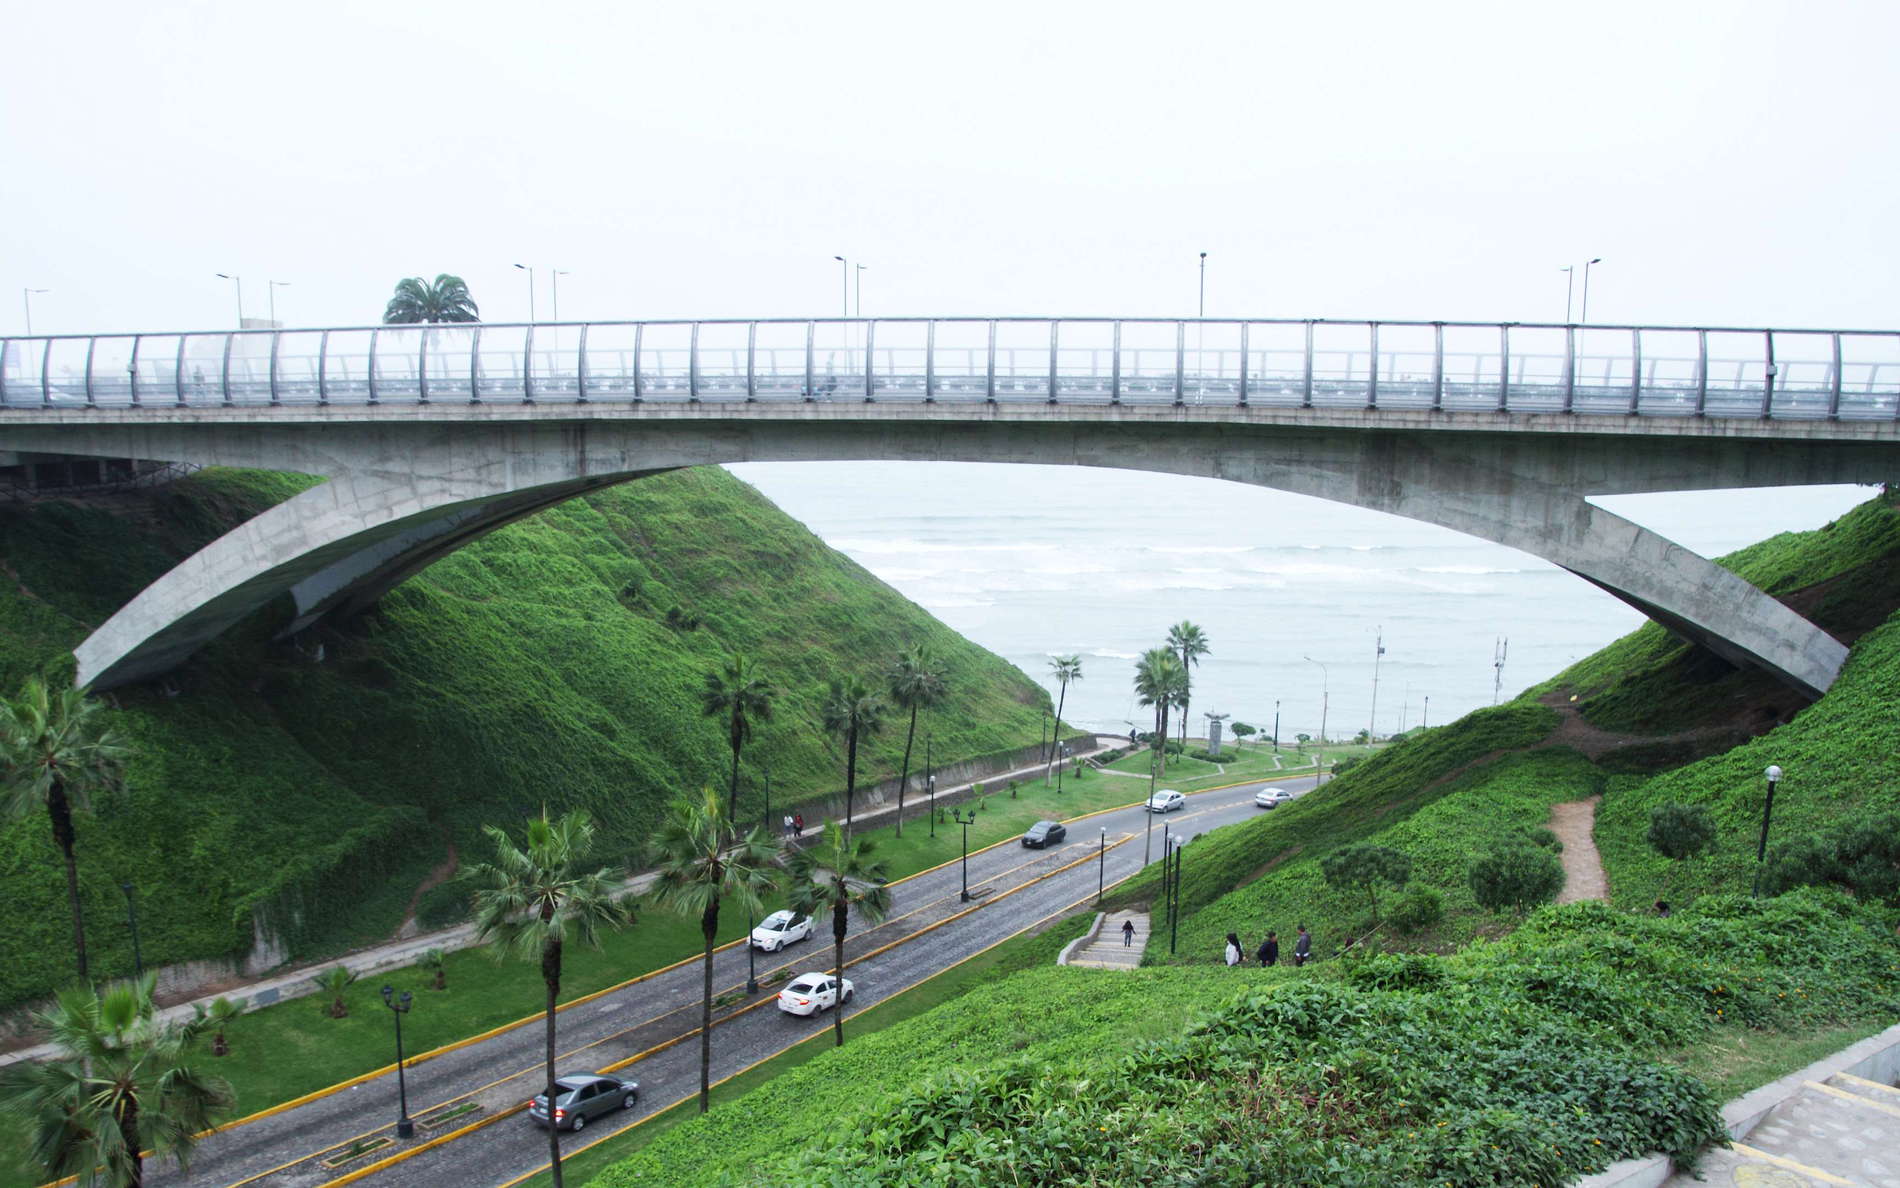 Lima | Puente Villena Rey at Miraflores